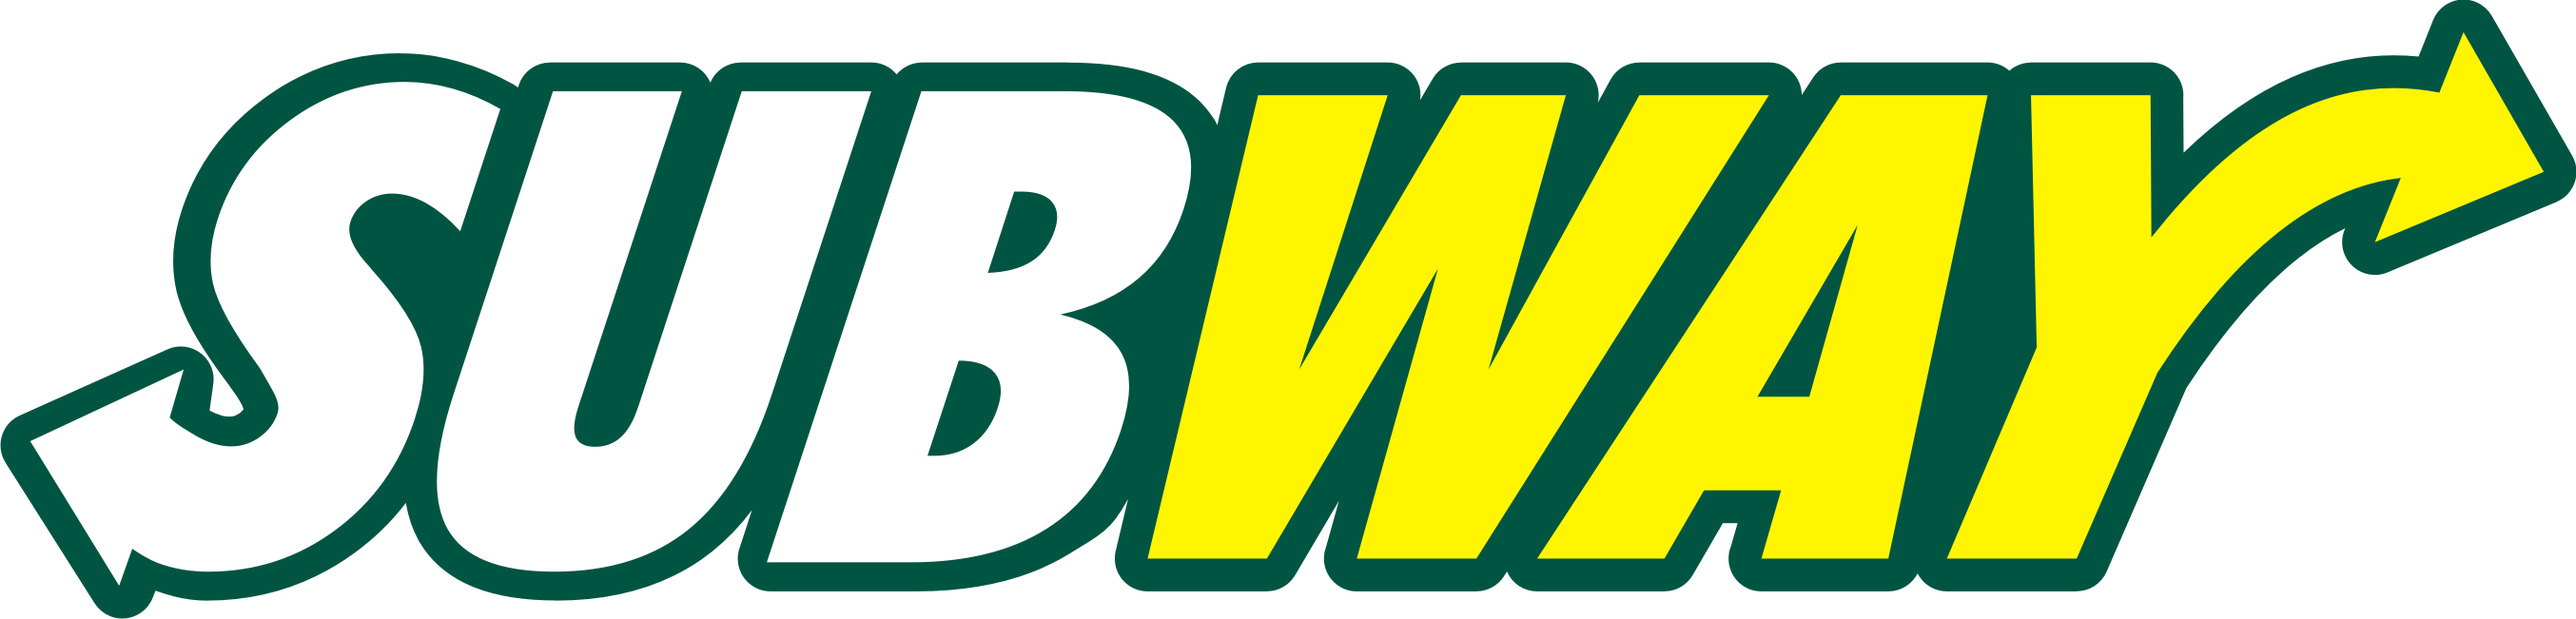 Subway Png Logo.